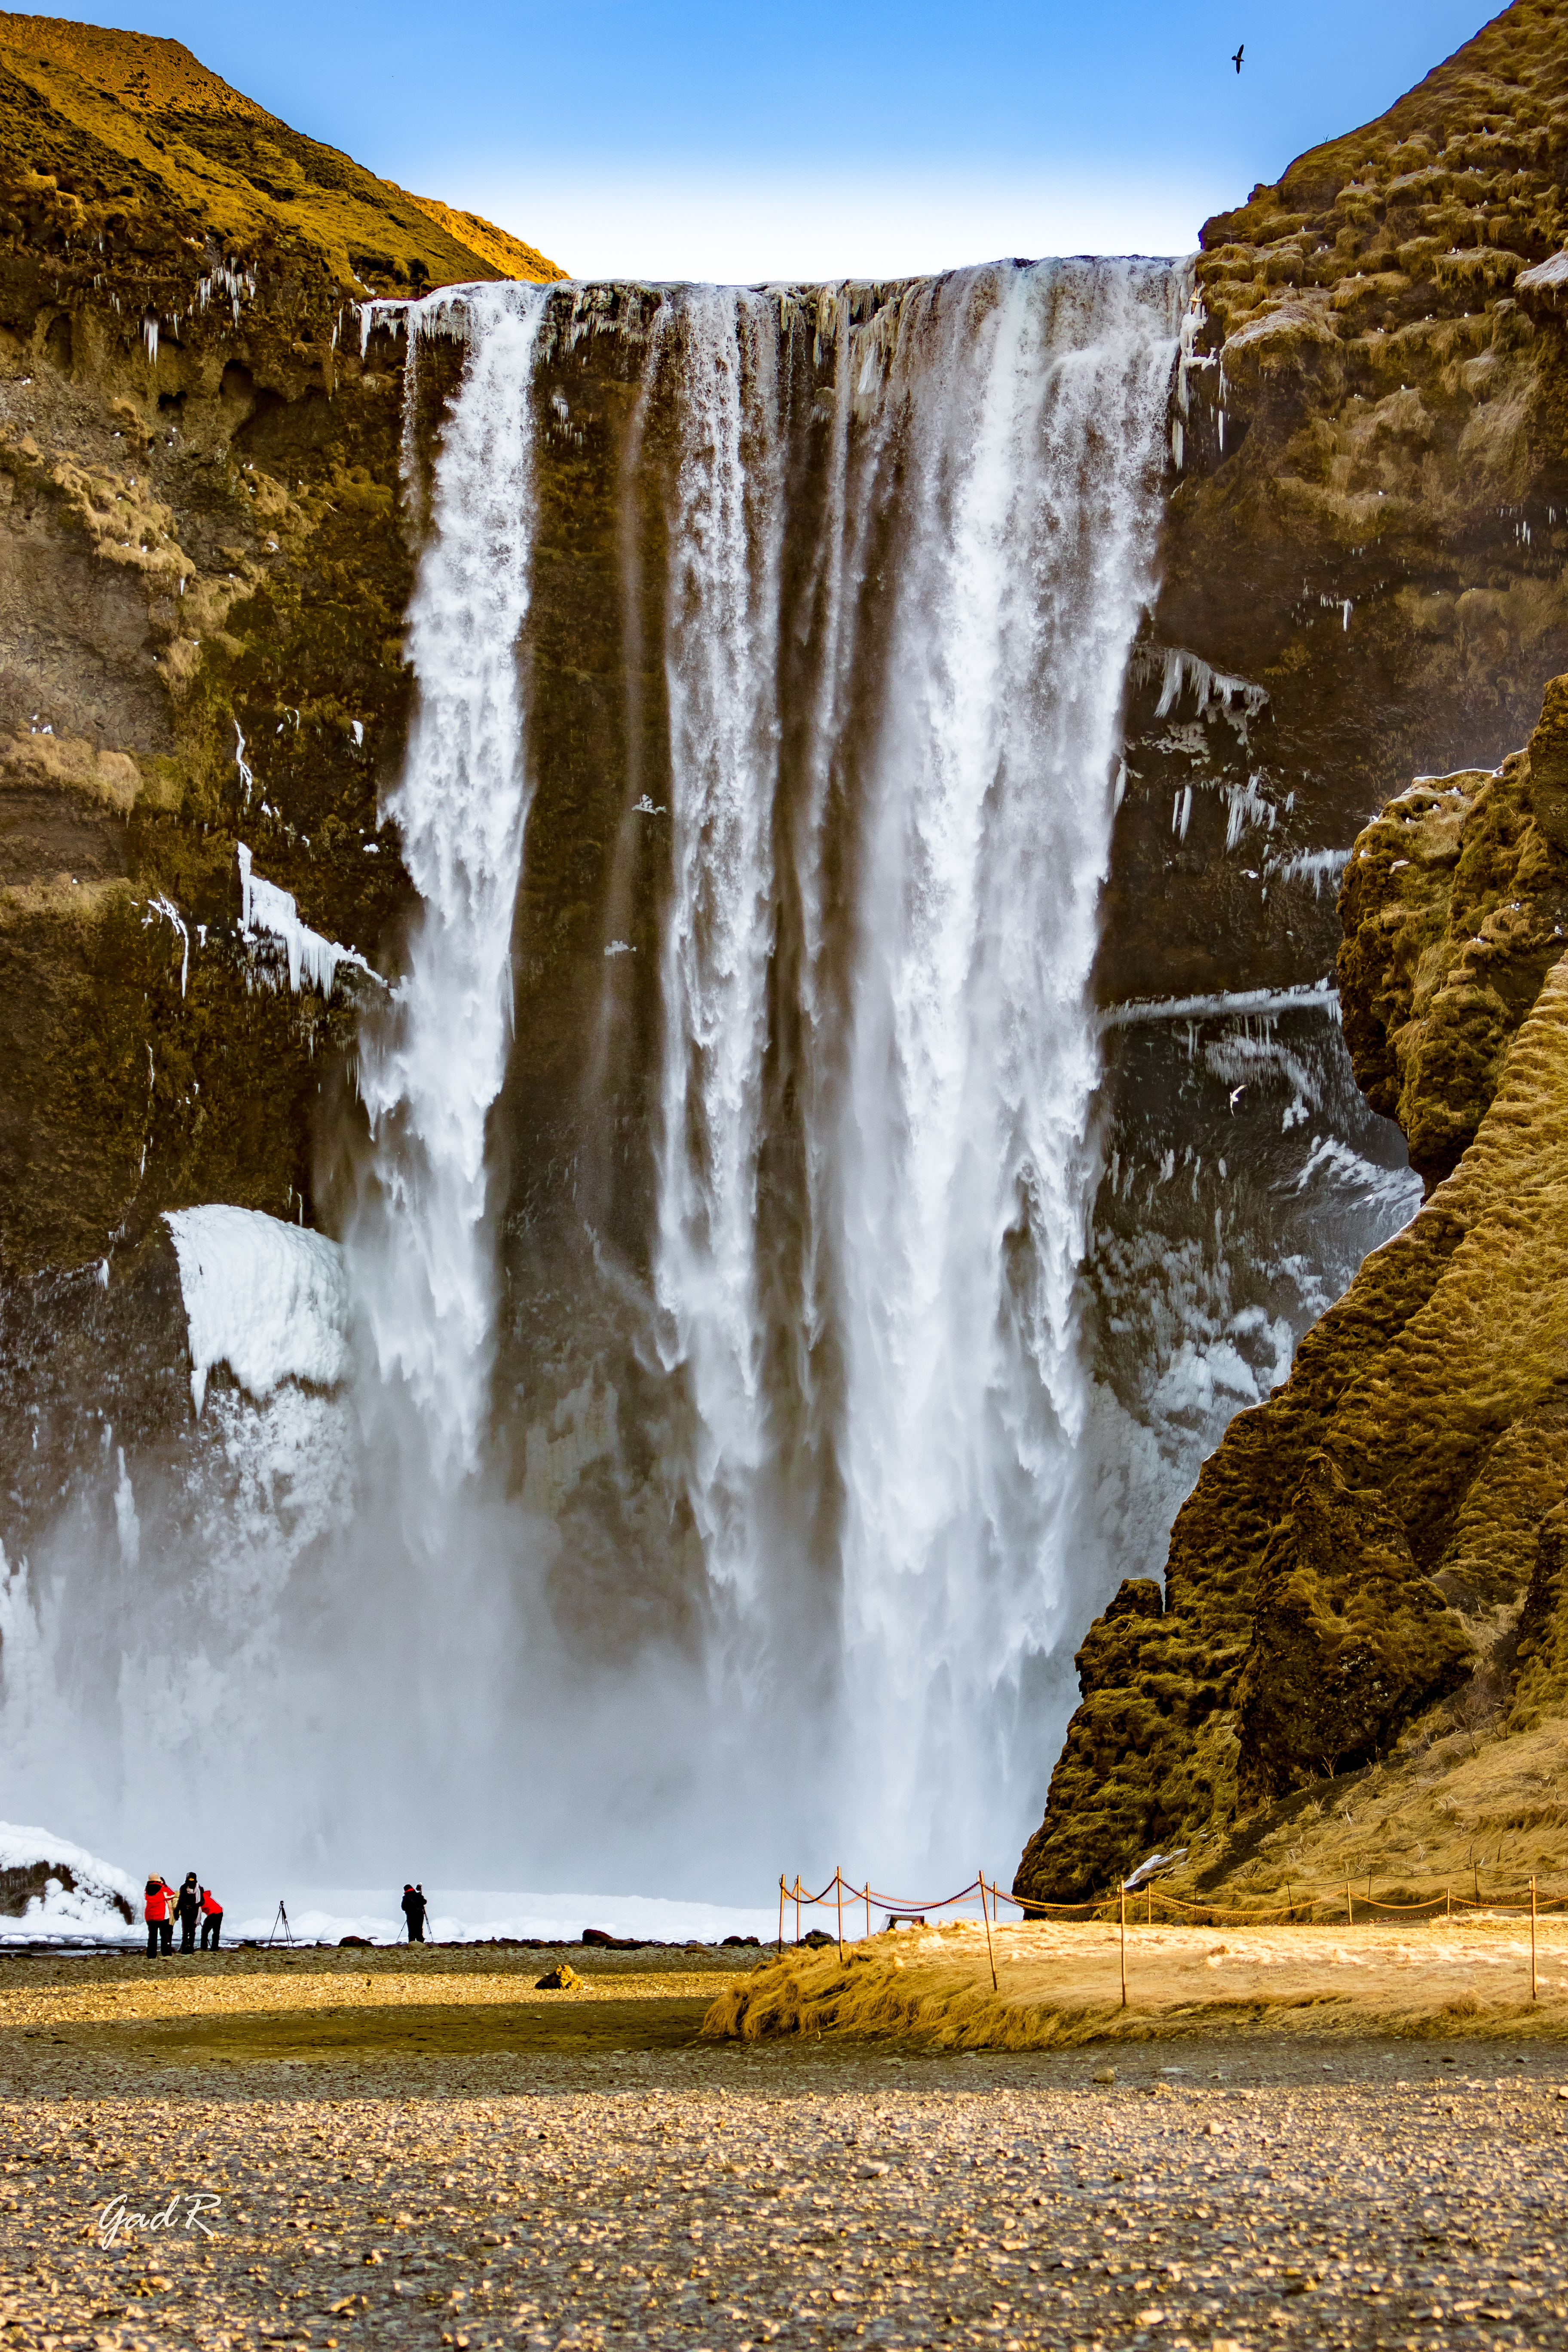 איסלנד טיול (צילום: גד רייז)